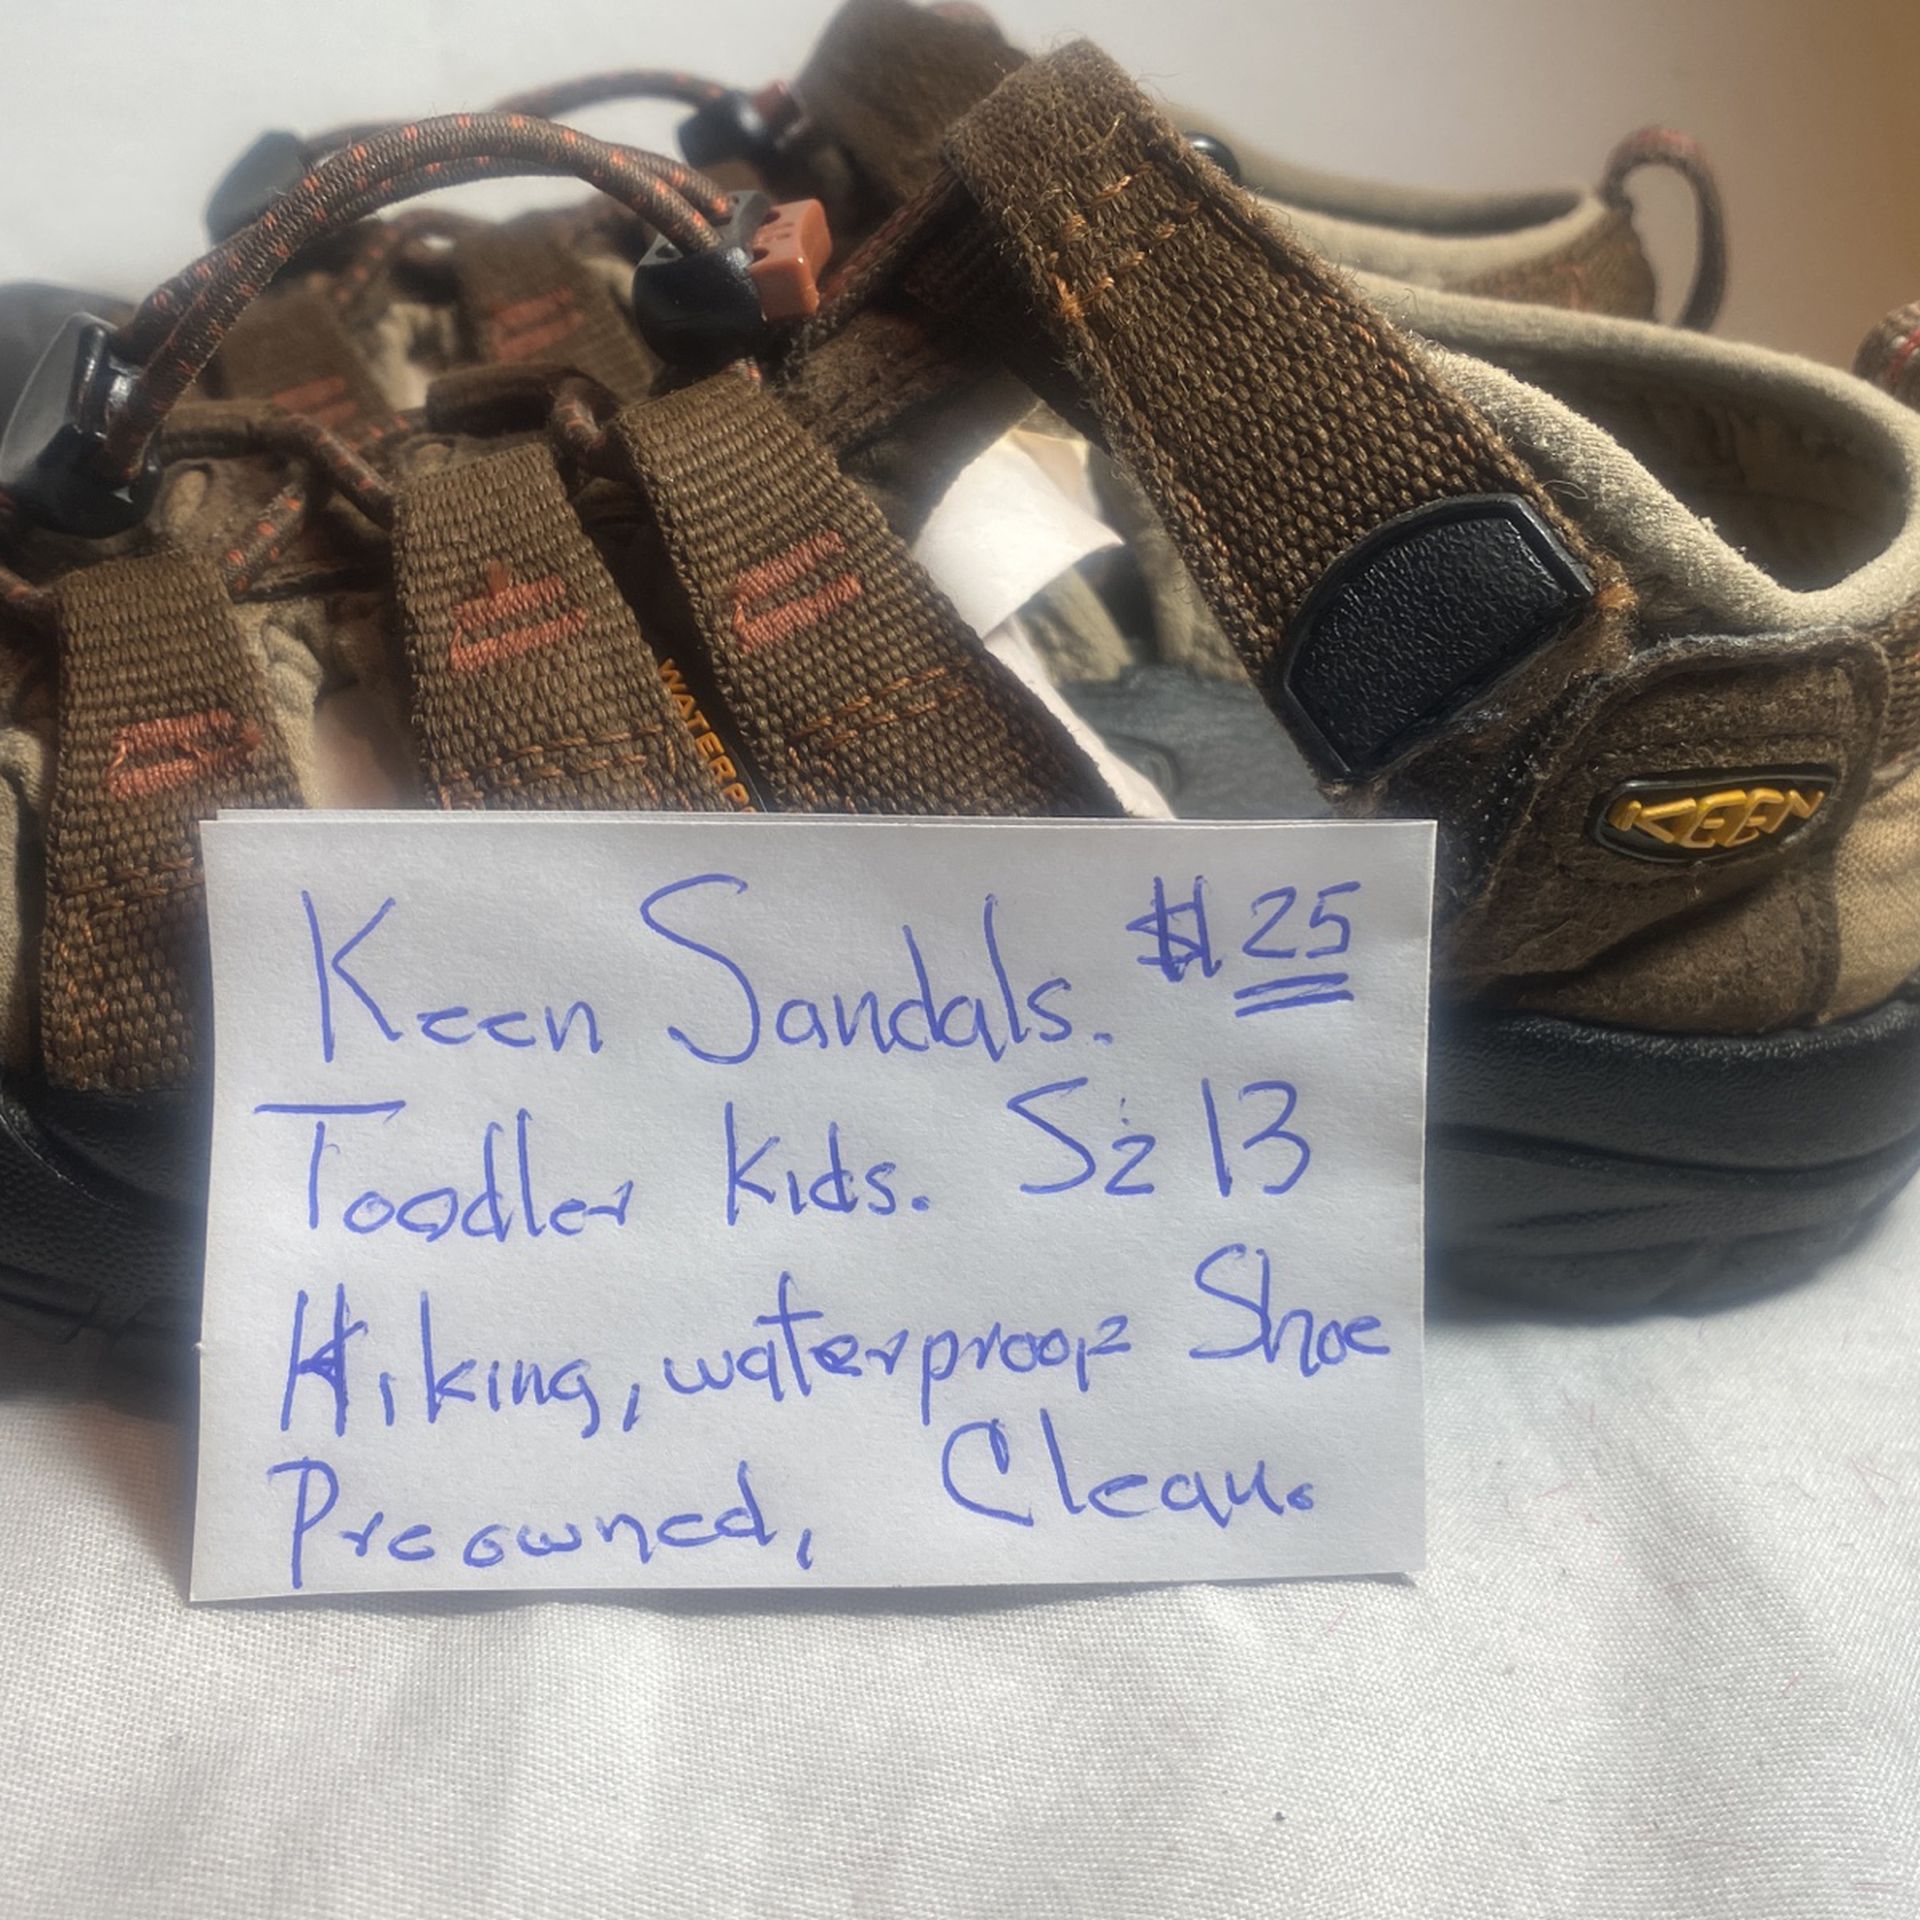 Keen Sandals Toddler Sz13 .$25